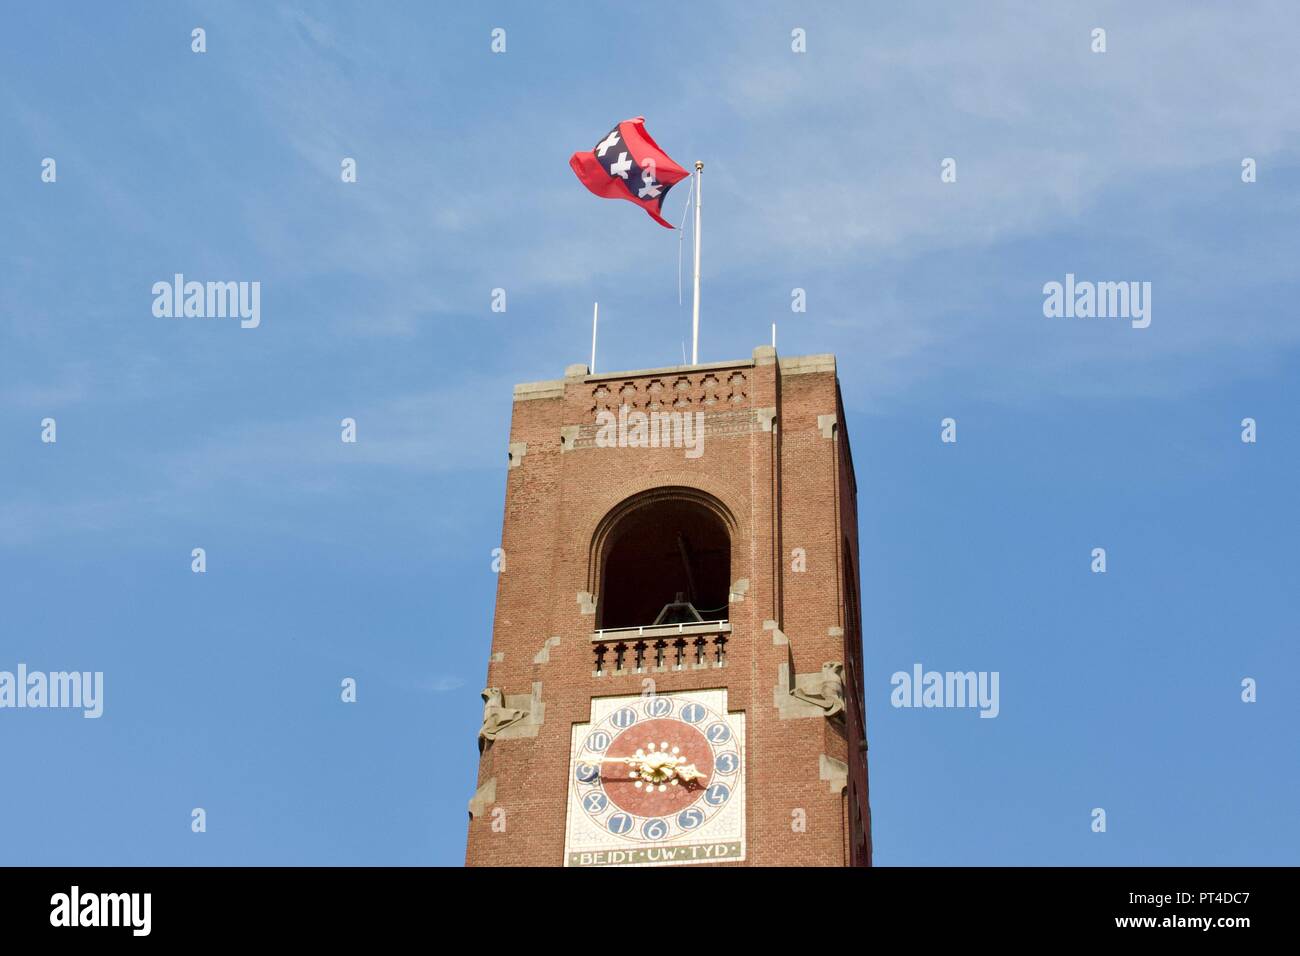 Beurs van Berlage ou tour Toren Amsterdam avec le drapeau sur le toit dans le vent. Beurs van Berlage est l'ancien bâtiment de la bourse. Banque D'Images